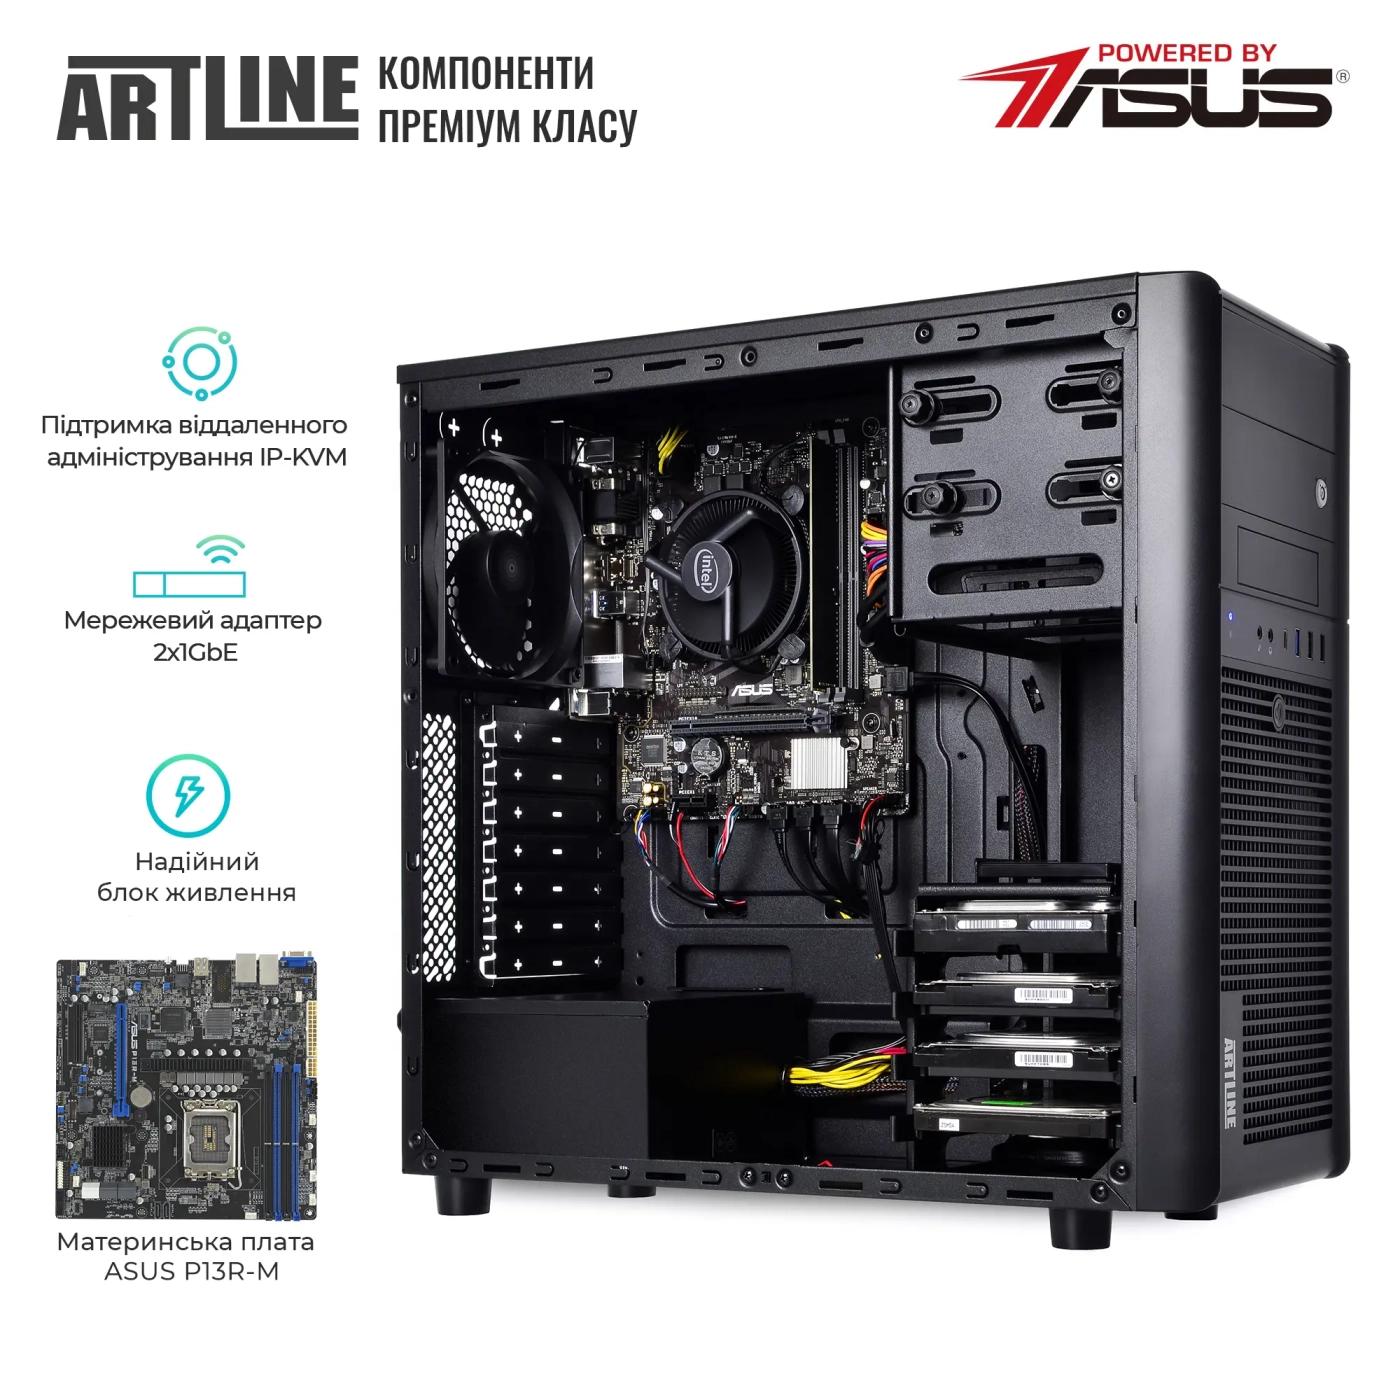 Купить Сервер ARTLINE Business T35 (T35v42) - фото 2